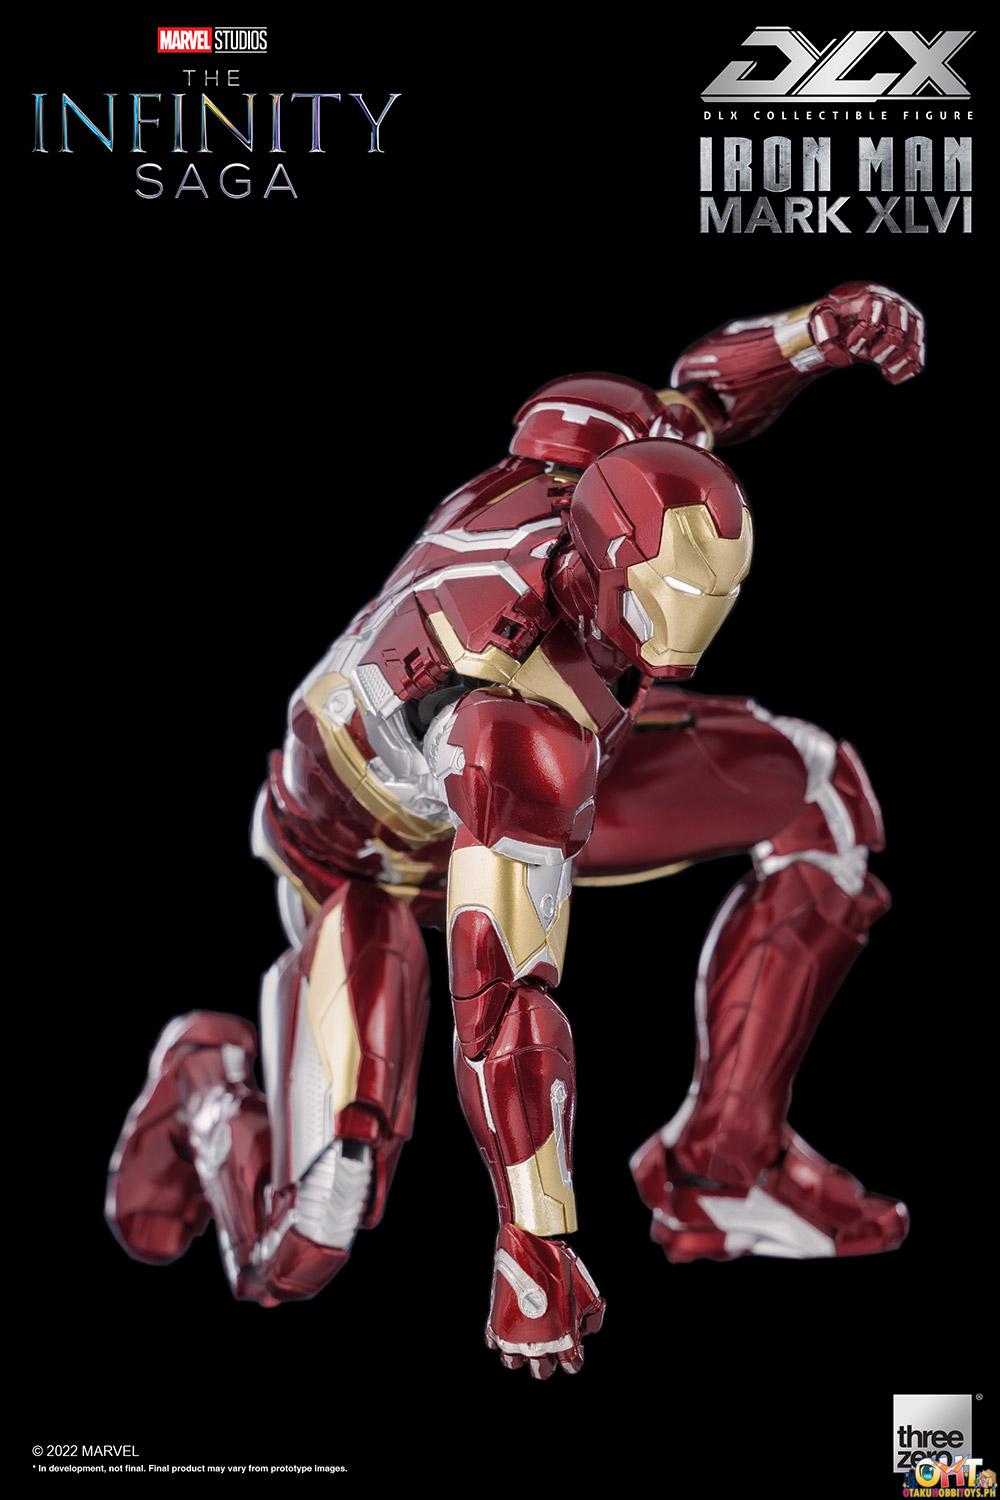 ThreeZero DLX Iron Man Mark 46 - The Infinity Saga